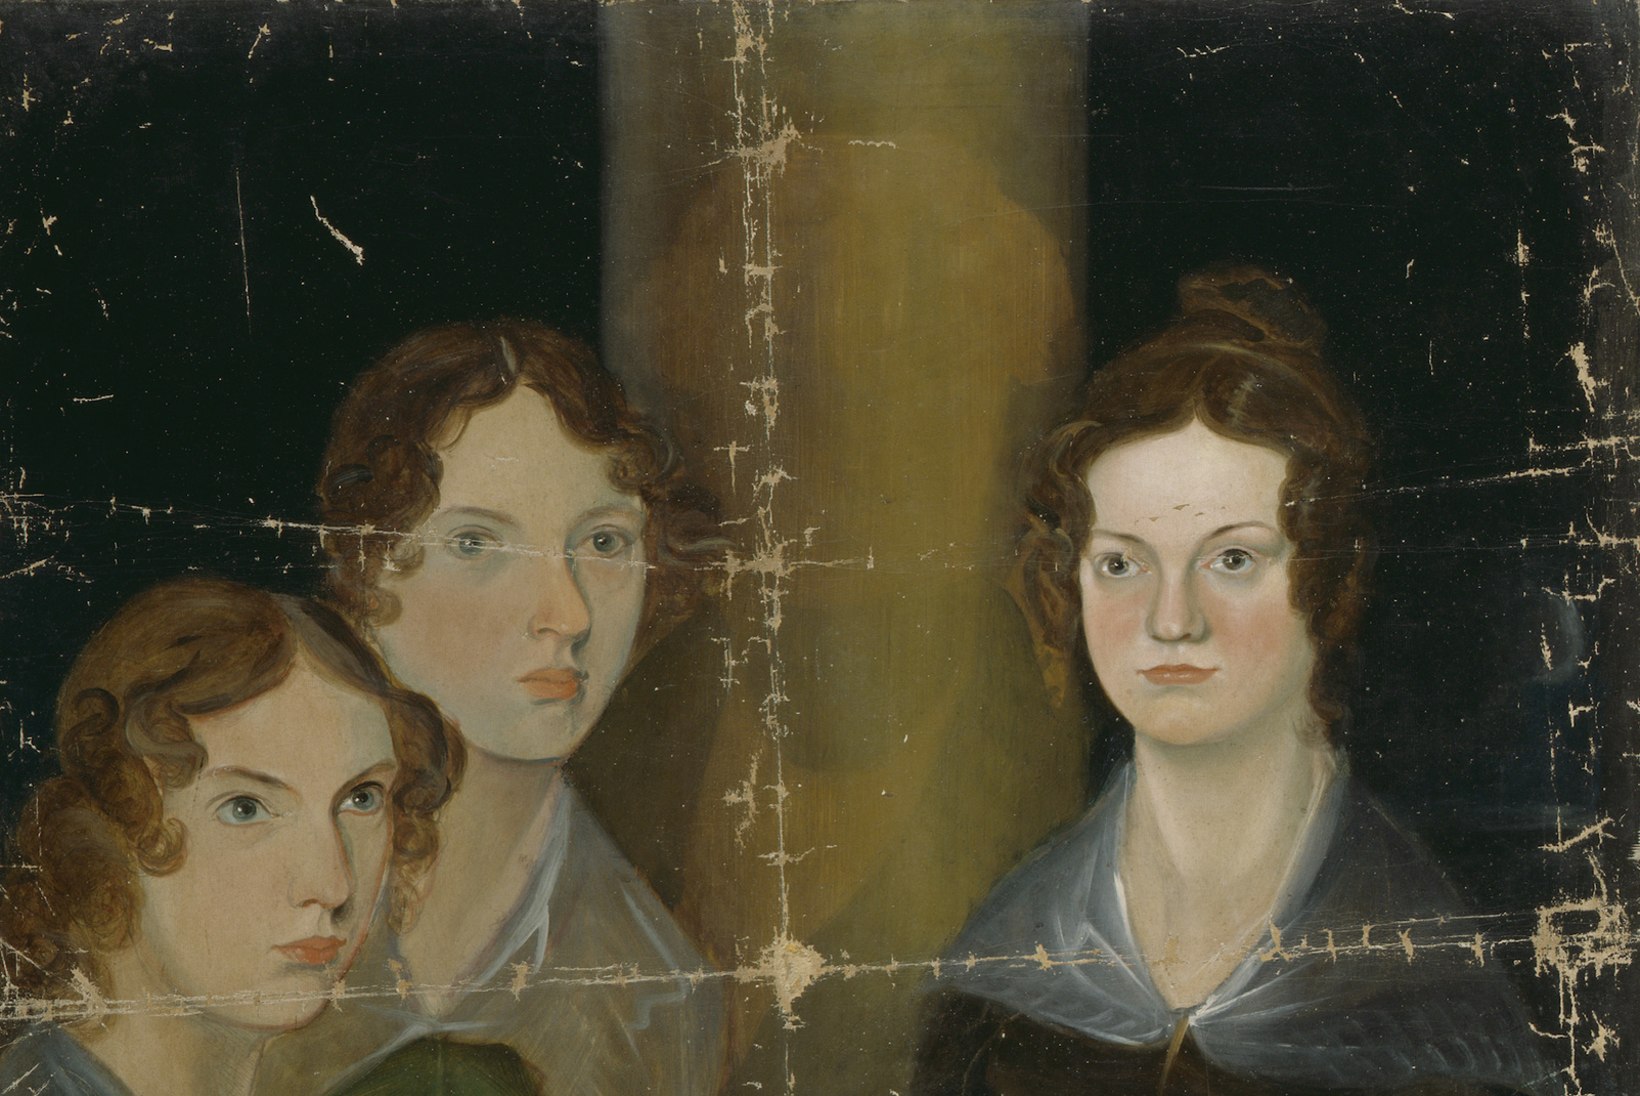 Kas õdede Brontëde traagiline surm oli saatusest määratud?